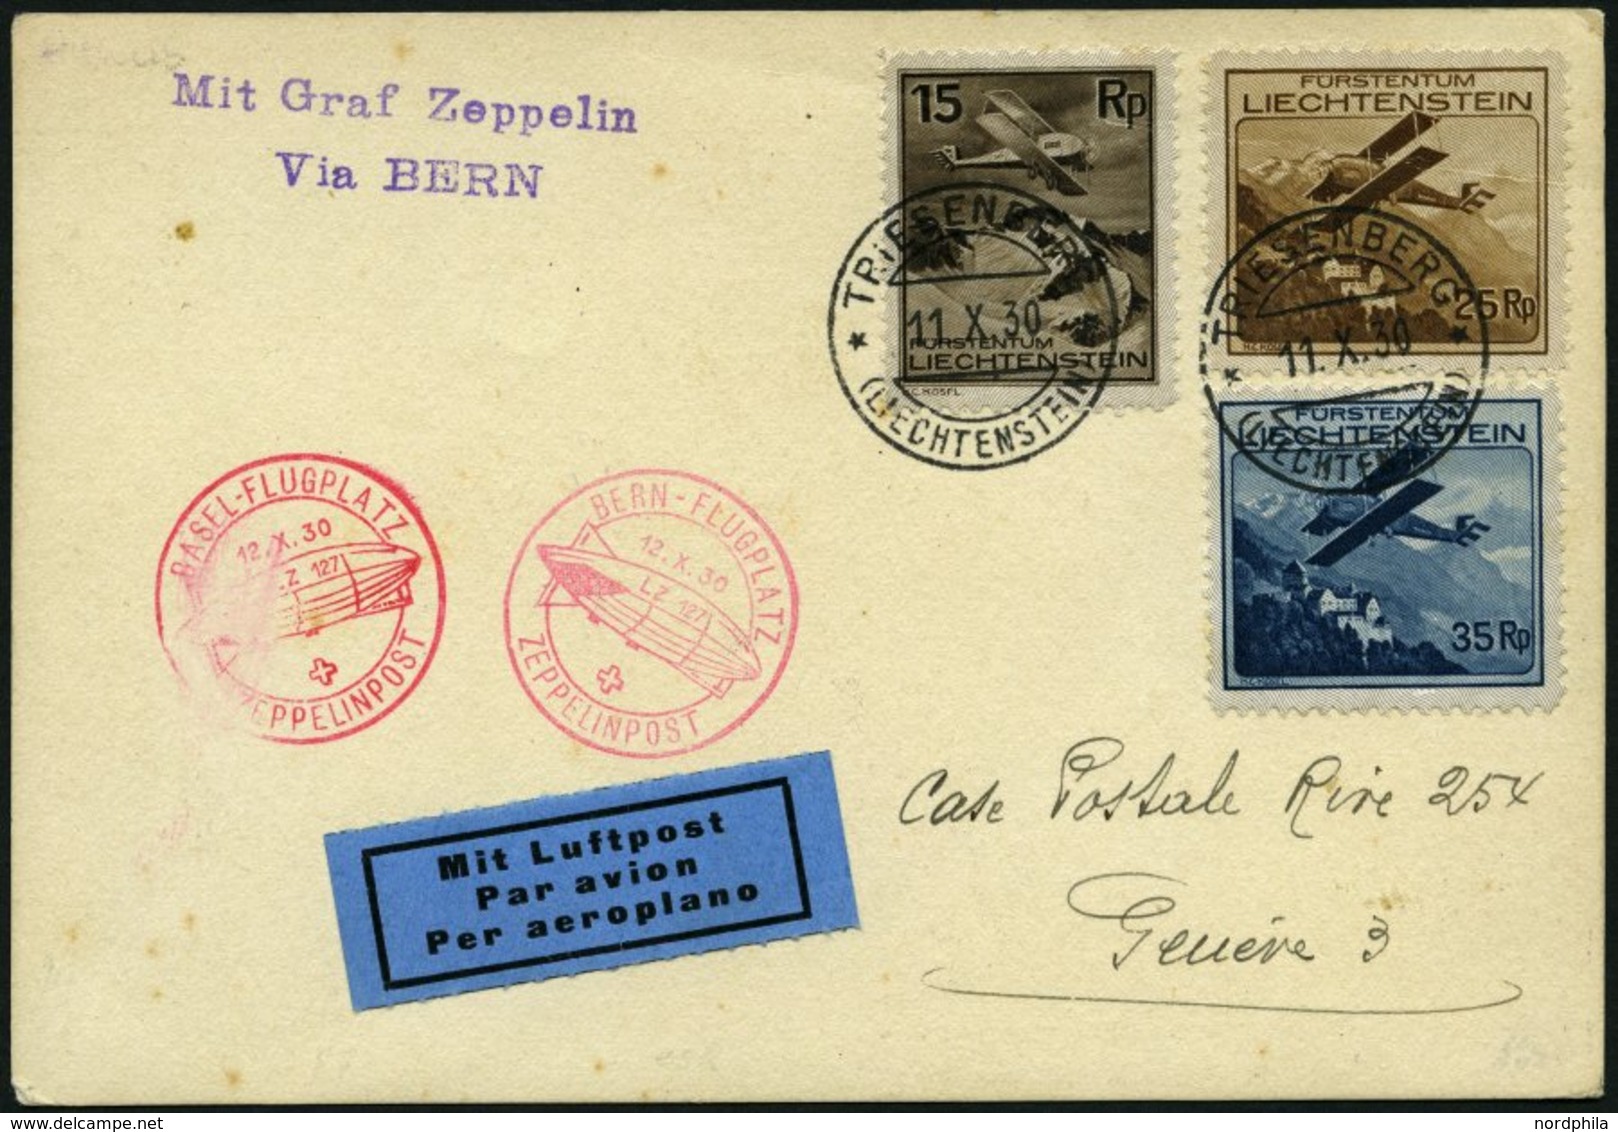 ZULEITUNGSPOST 95 BRIEF, Liechtenstein: 1930, Basel-Zürich, Frankiert Mit Mi.Nr. 108, 110 Und 111, Karte Feinst - Zeppelin